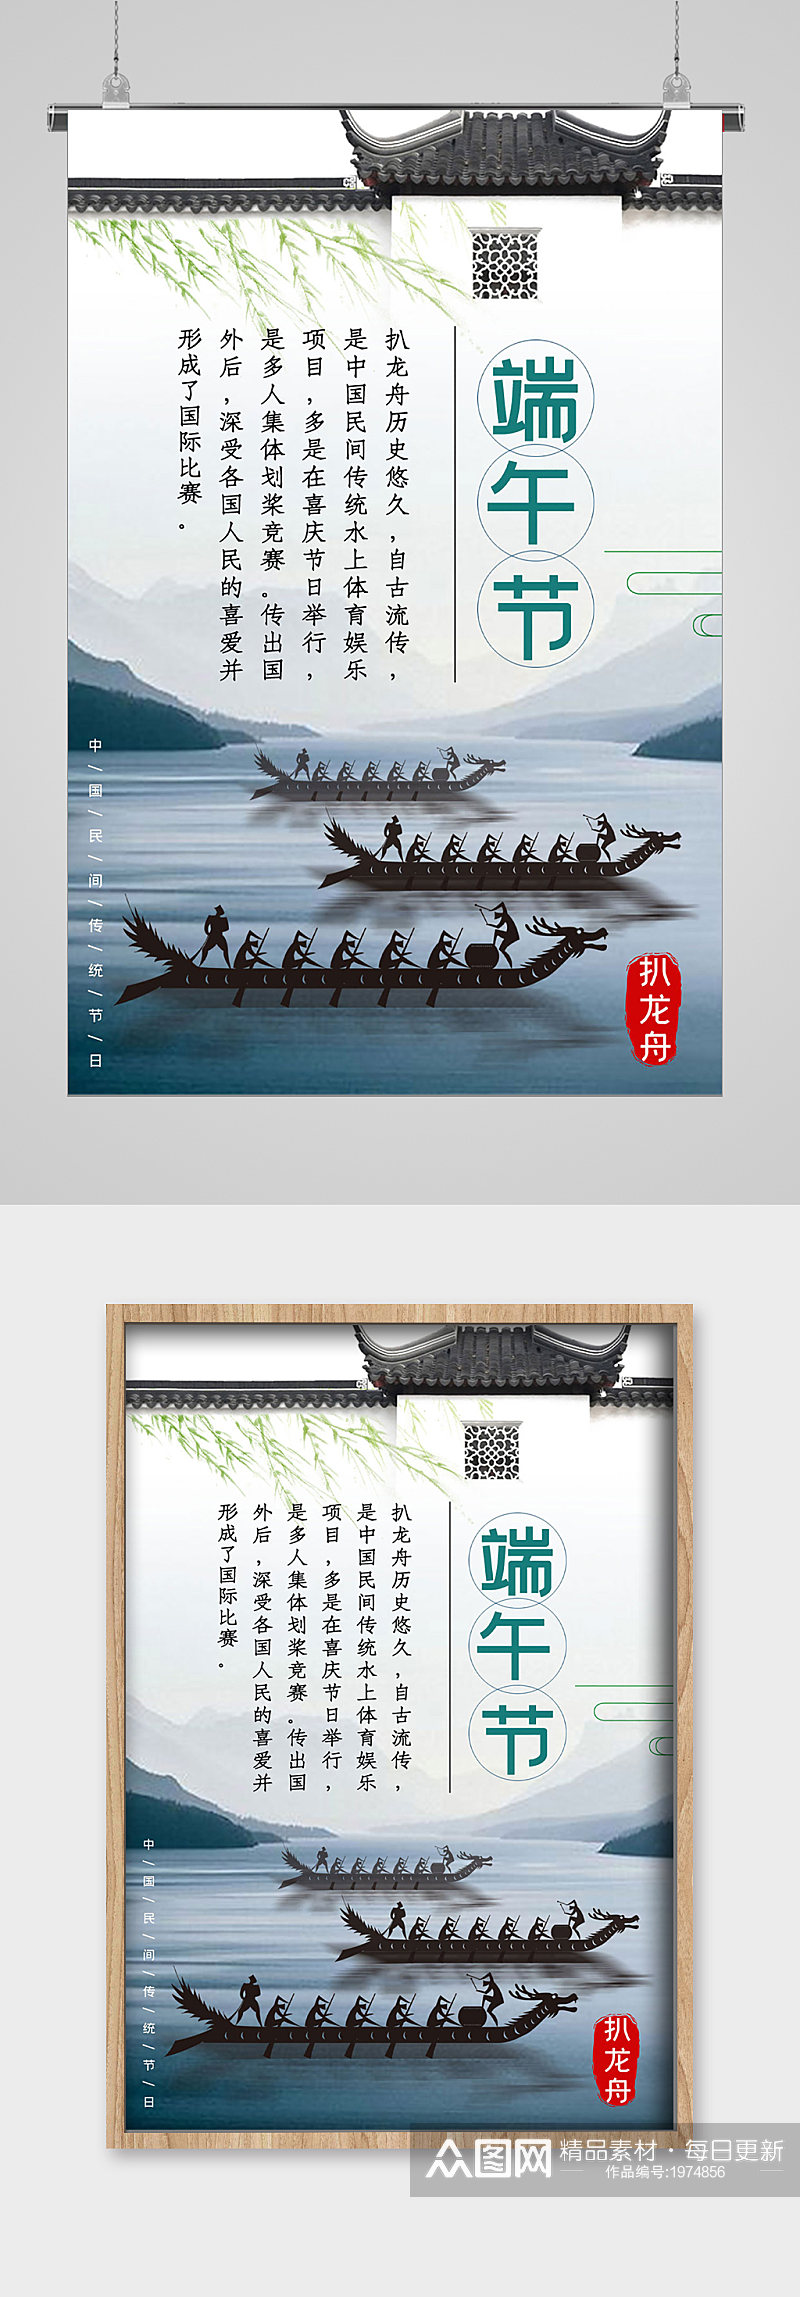 端午节龙舟比赛宣传海报素材